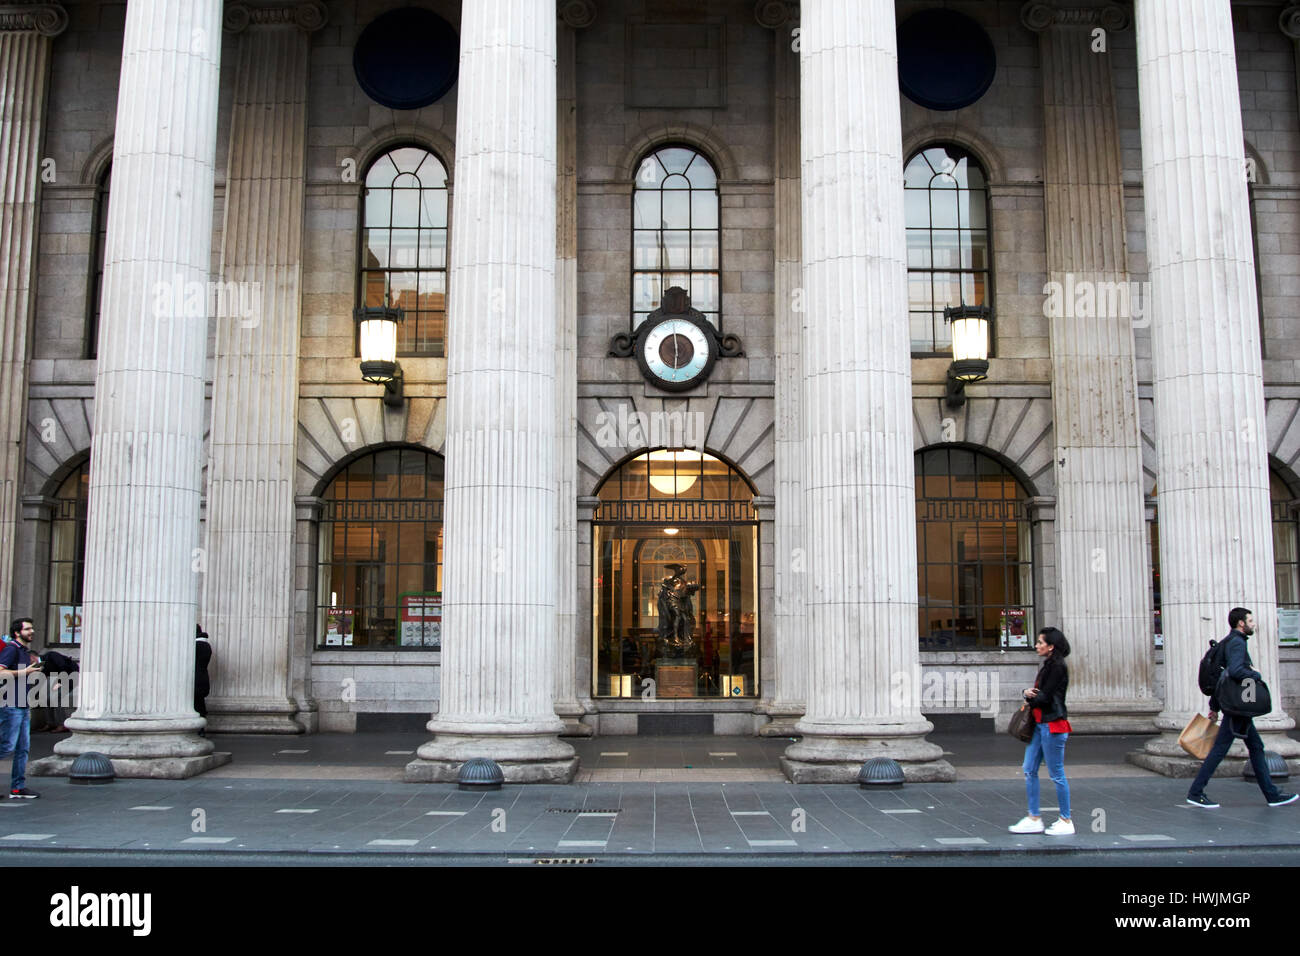 Les gens en passant devant l'horloge et statue cuchullain dans la fenêtre de l'objet stratégie de Dublin République d'Irlande Banque D'Images